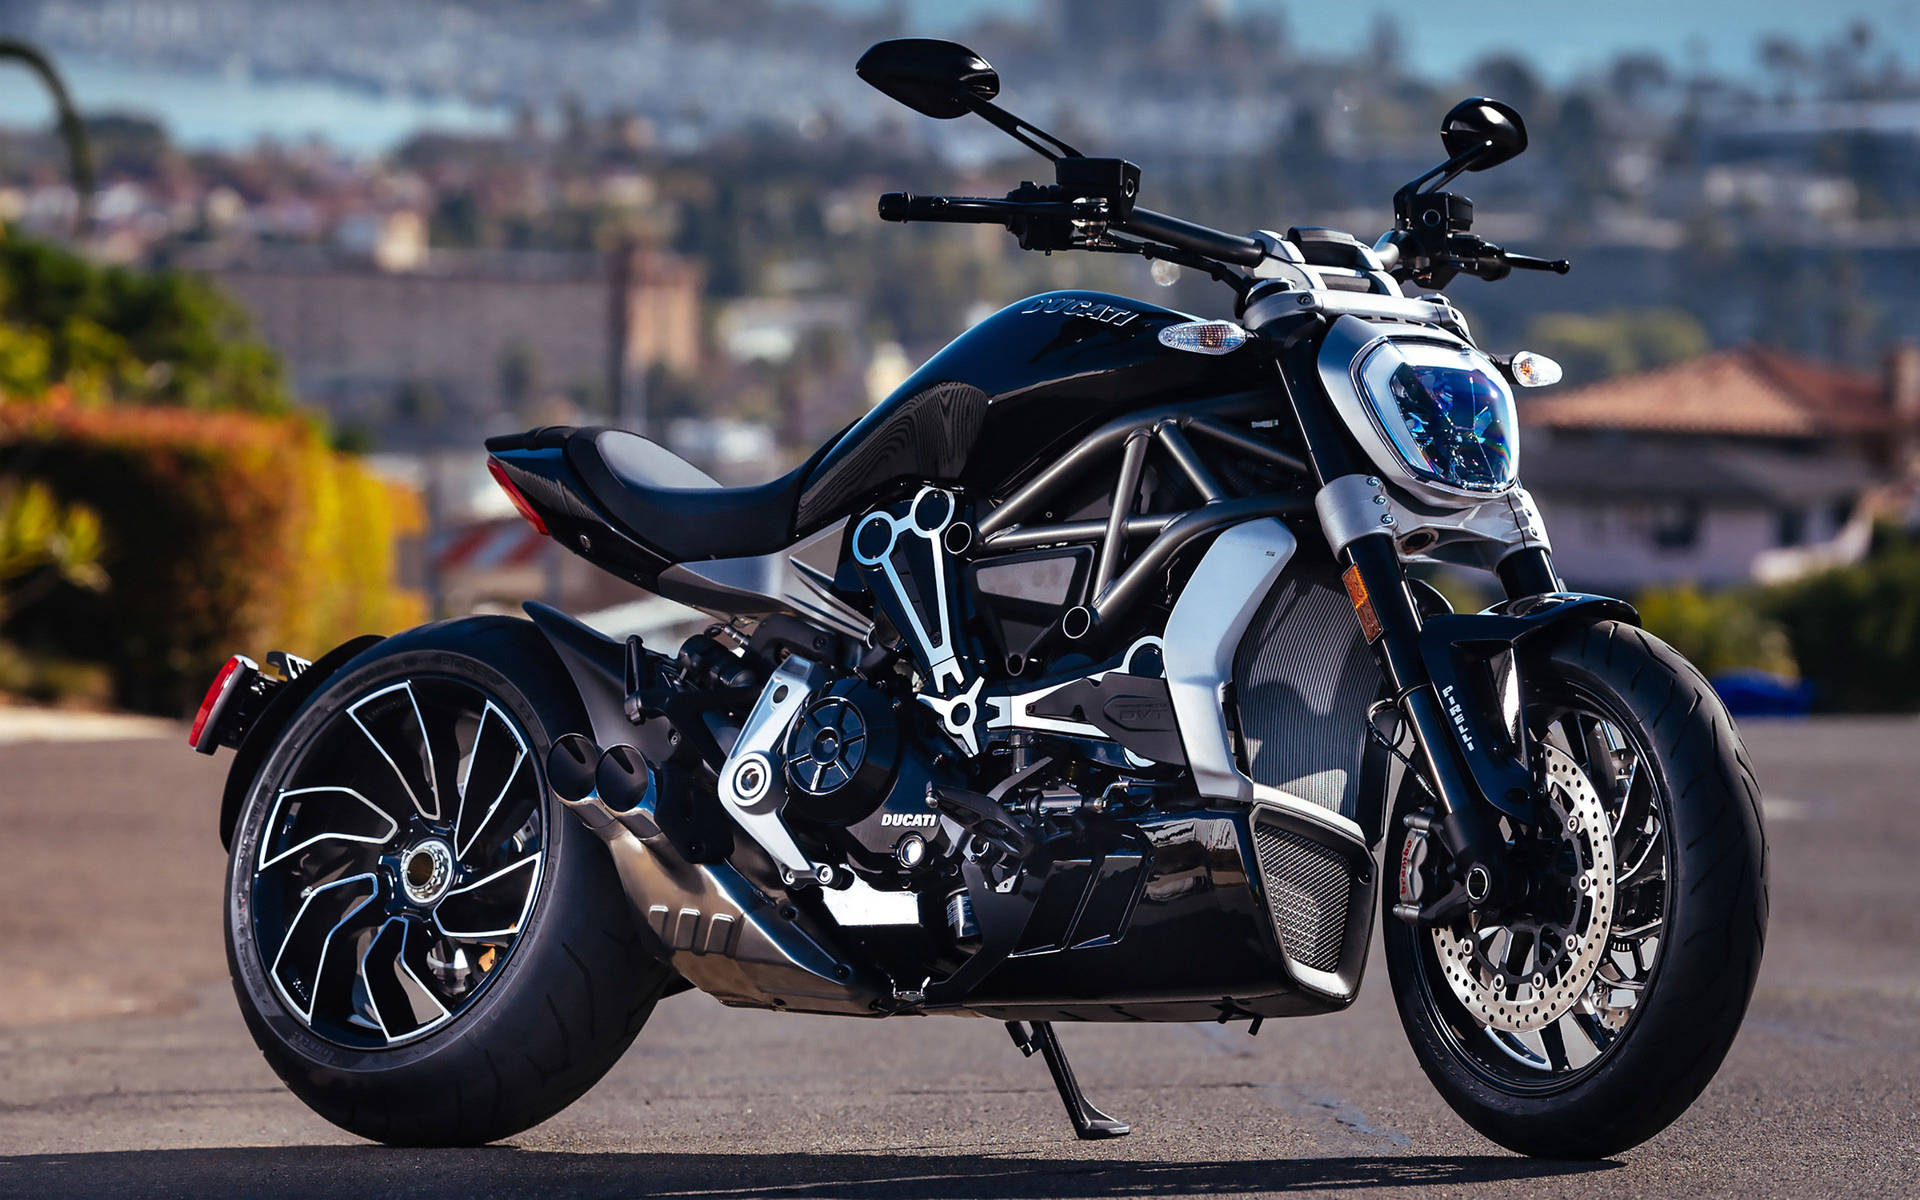 Black Ducati Diavel 1260 Motor Bike Wallpaper